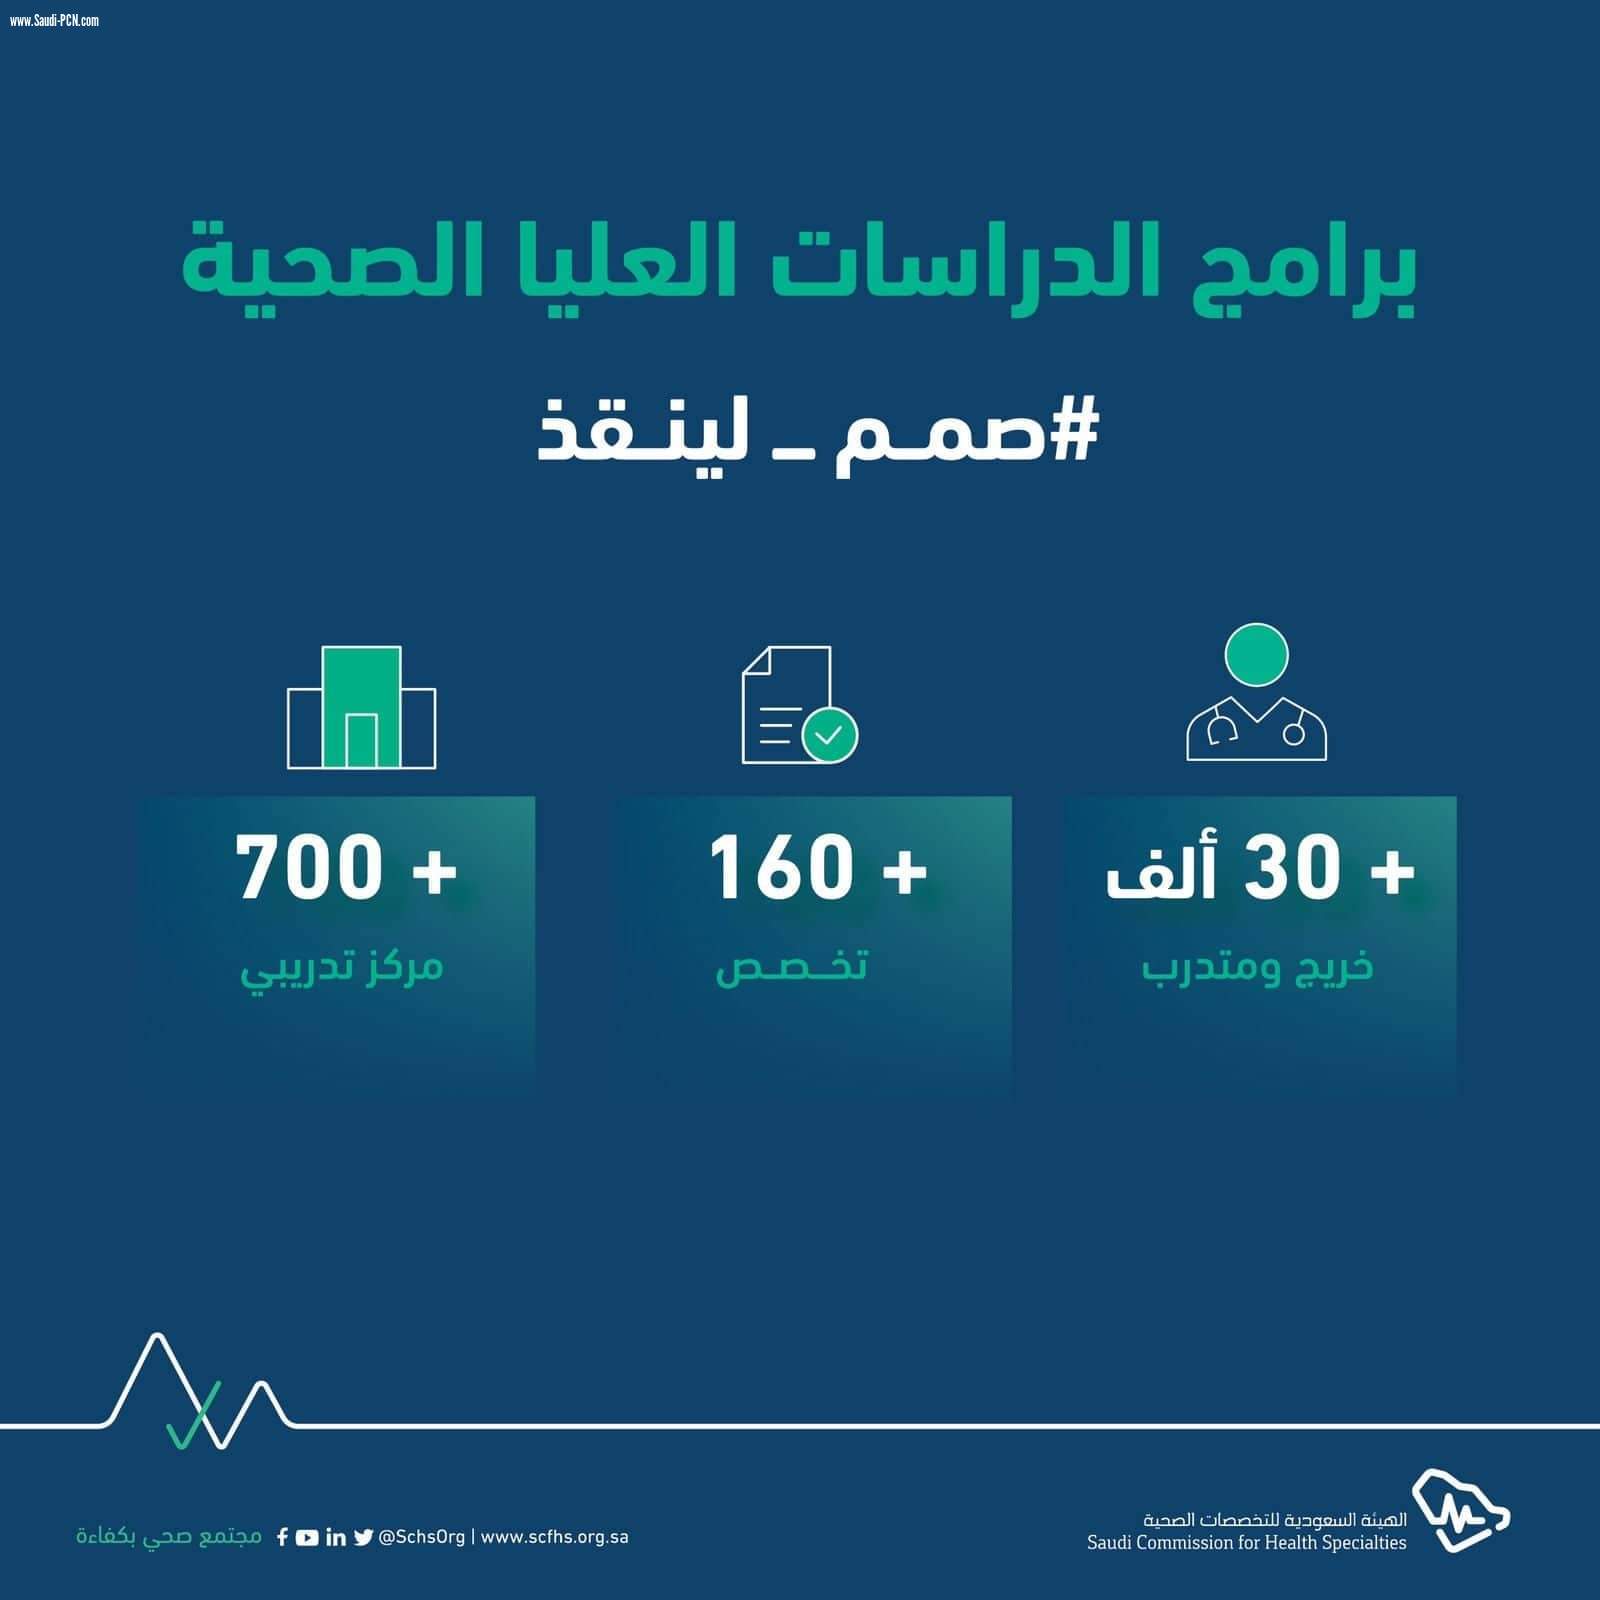 *الهيئة السعودية للتخصصات الصحية تطلق حملة 